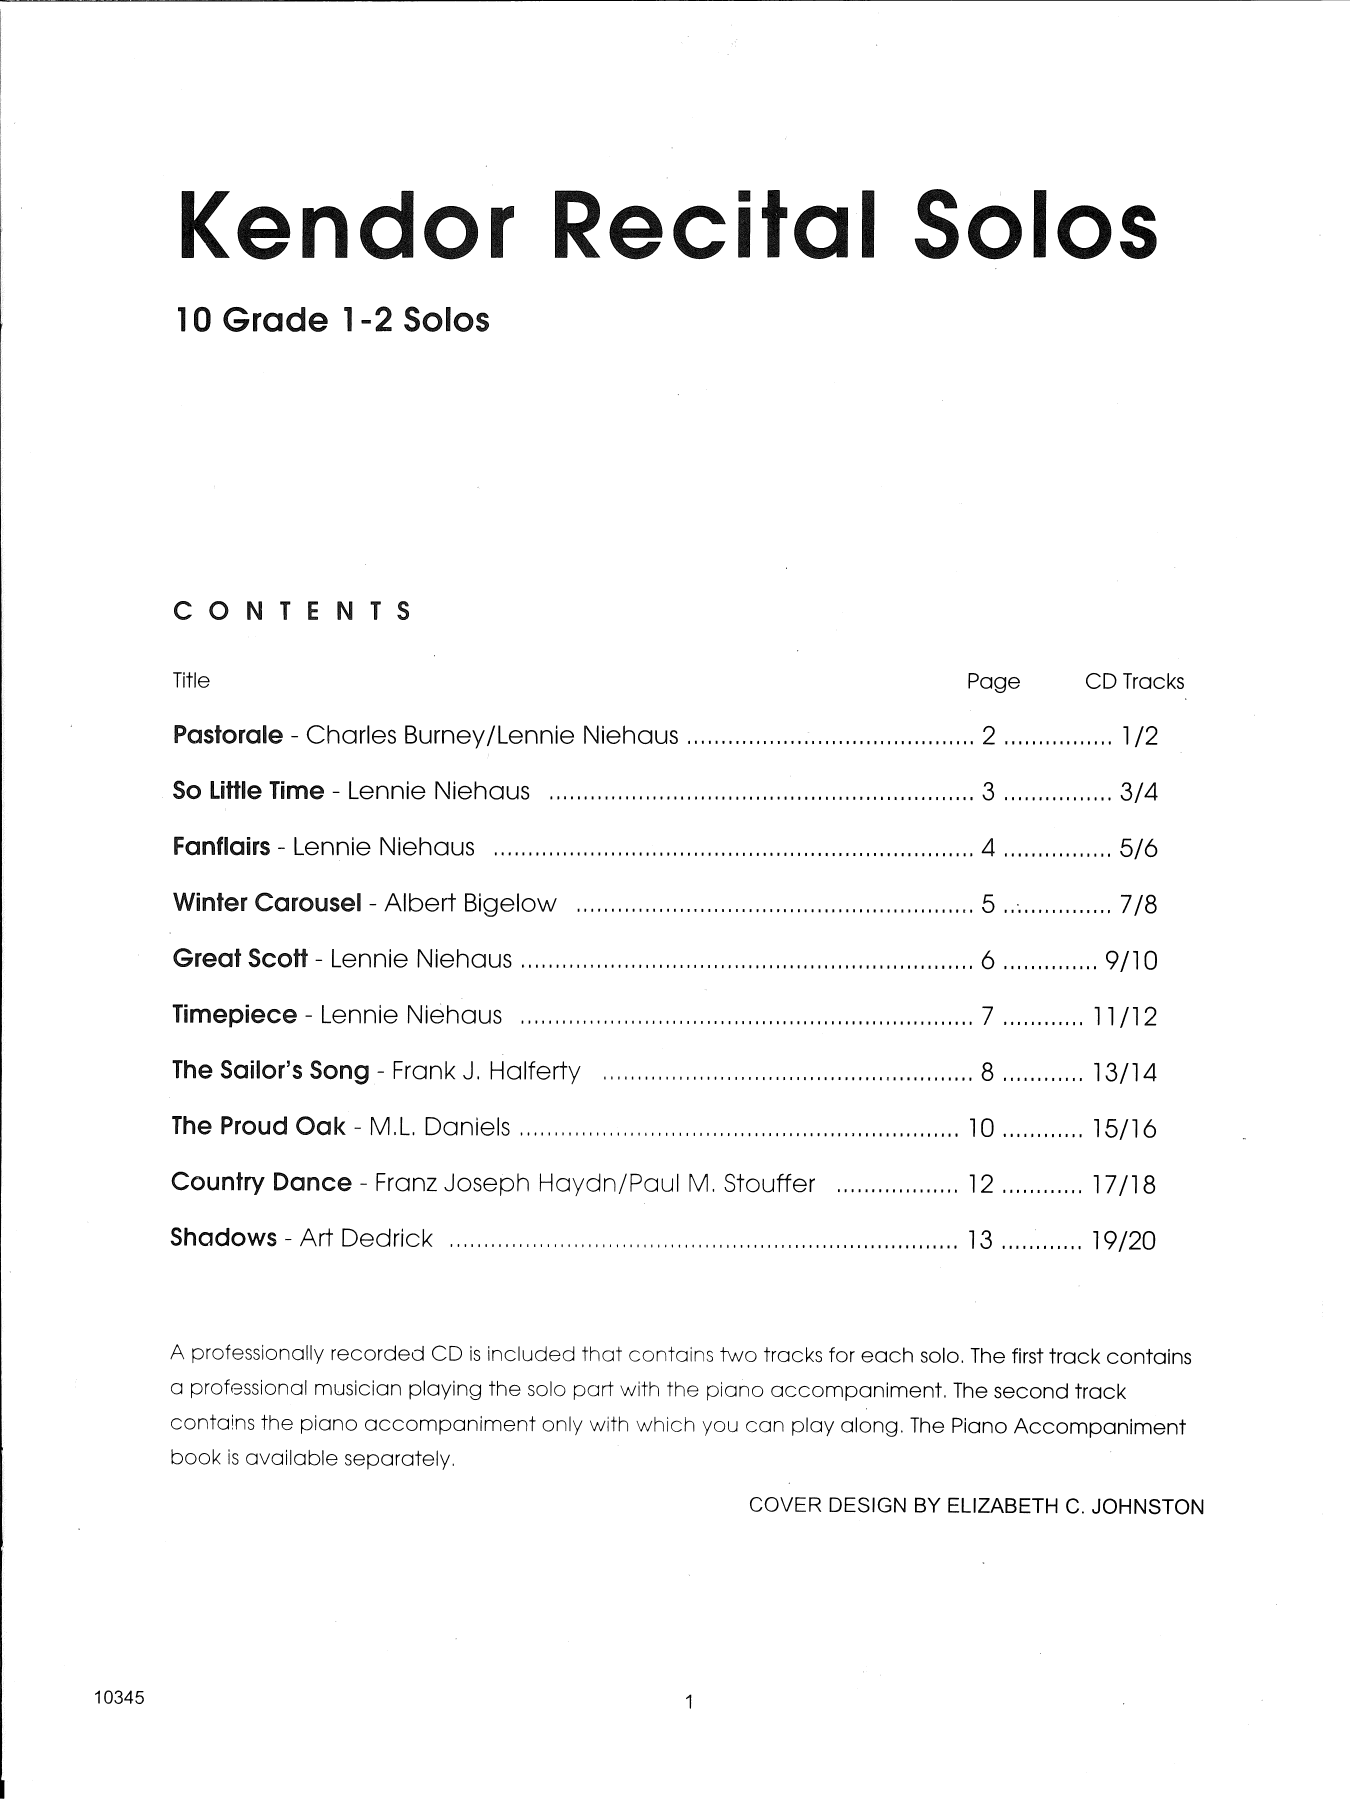 Download Various Kendor Recital Solos - Baritone T.C. - Sheet Music